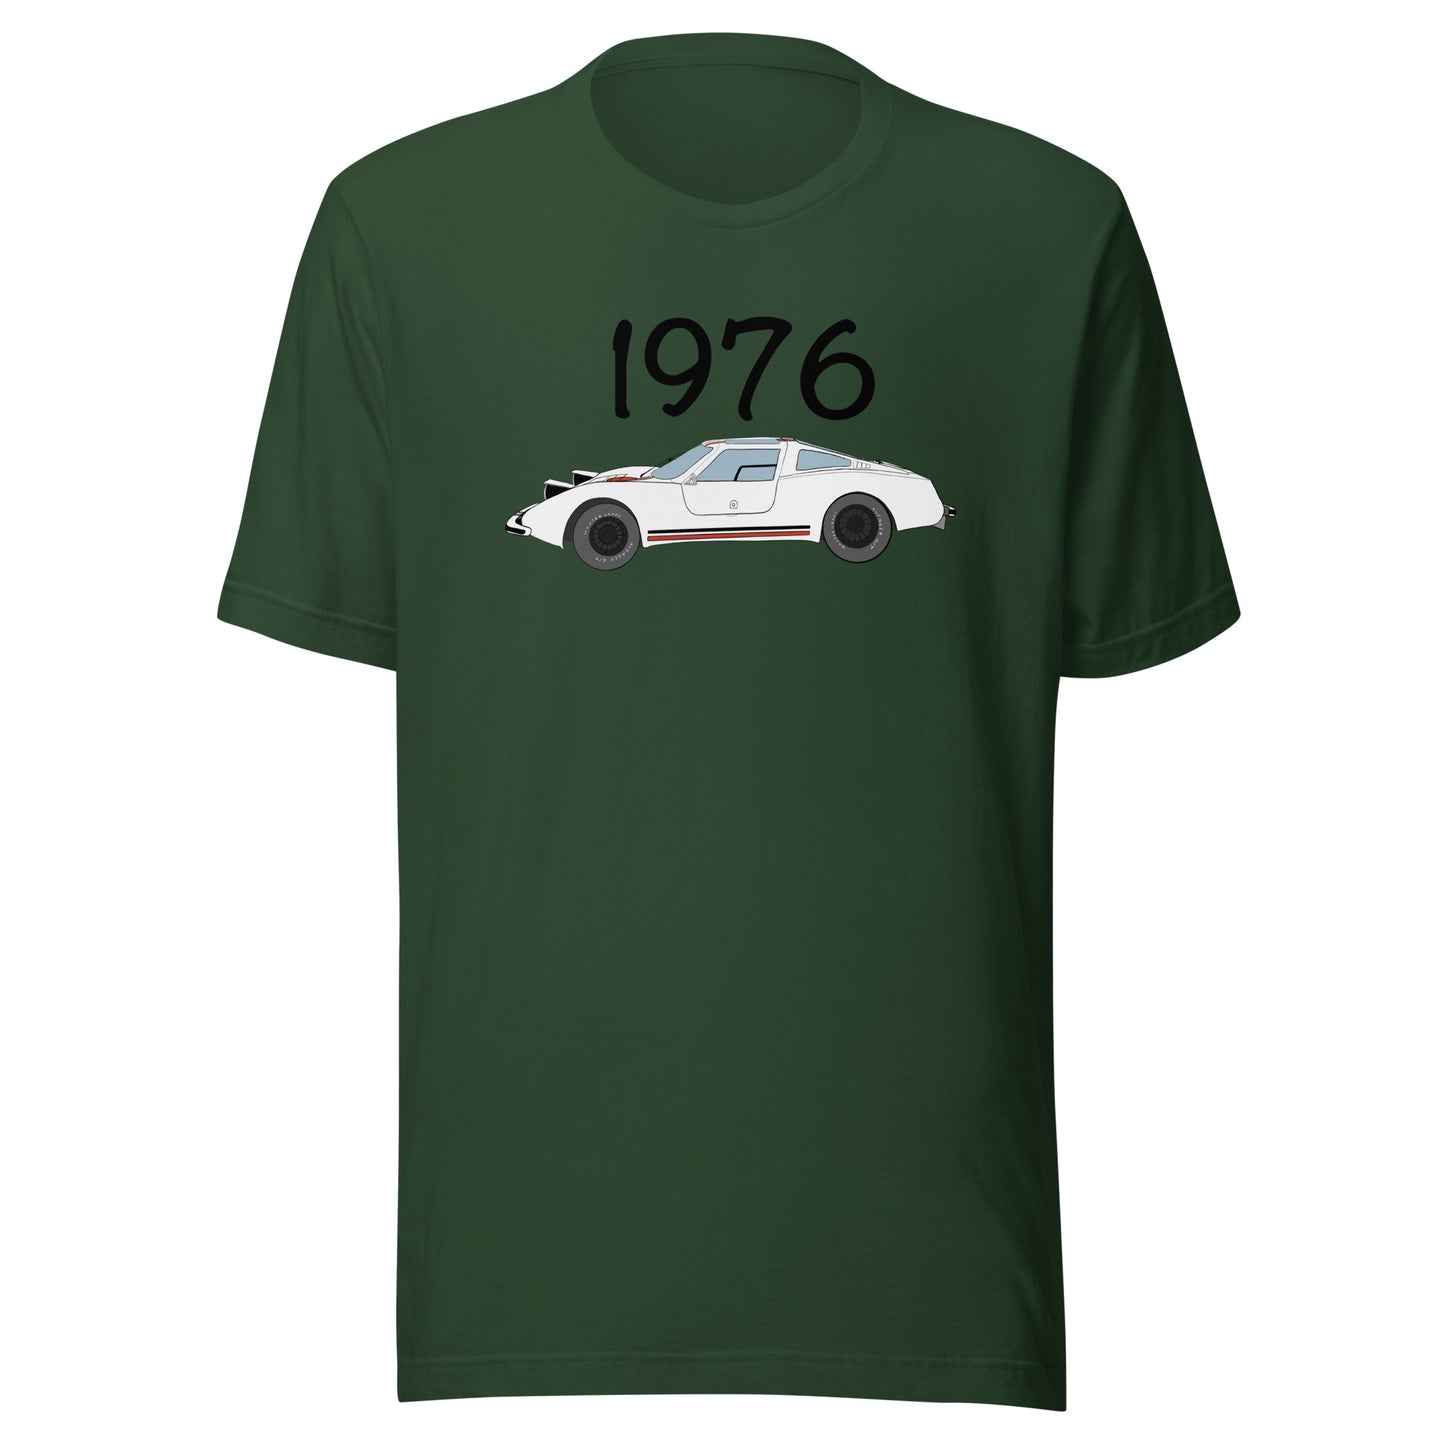 Eva 1976 t-shirt